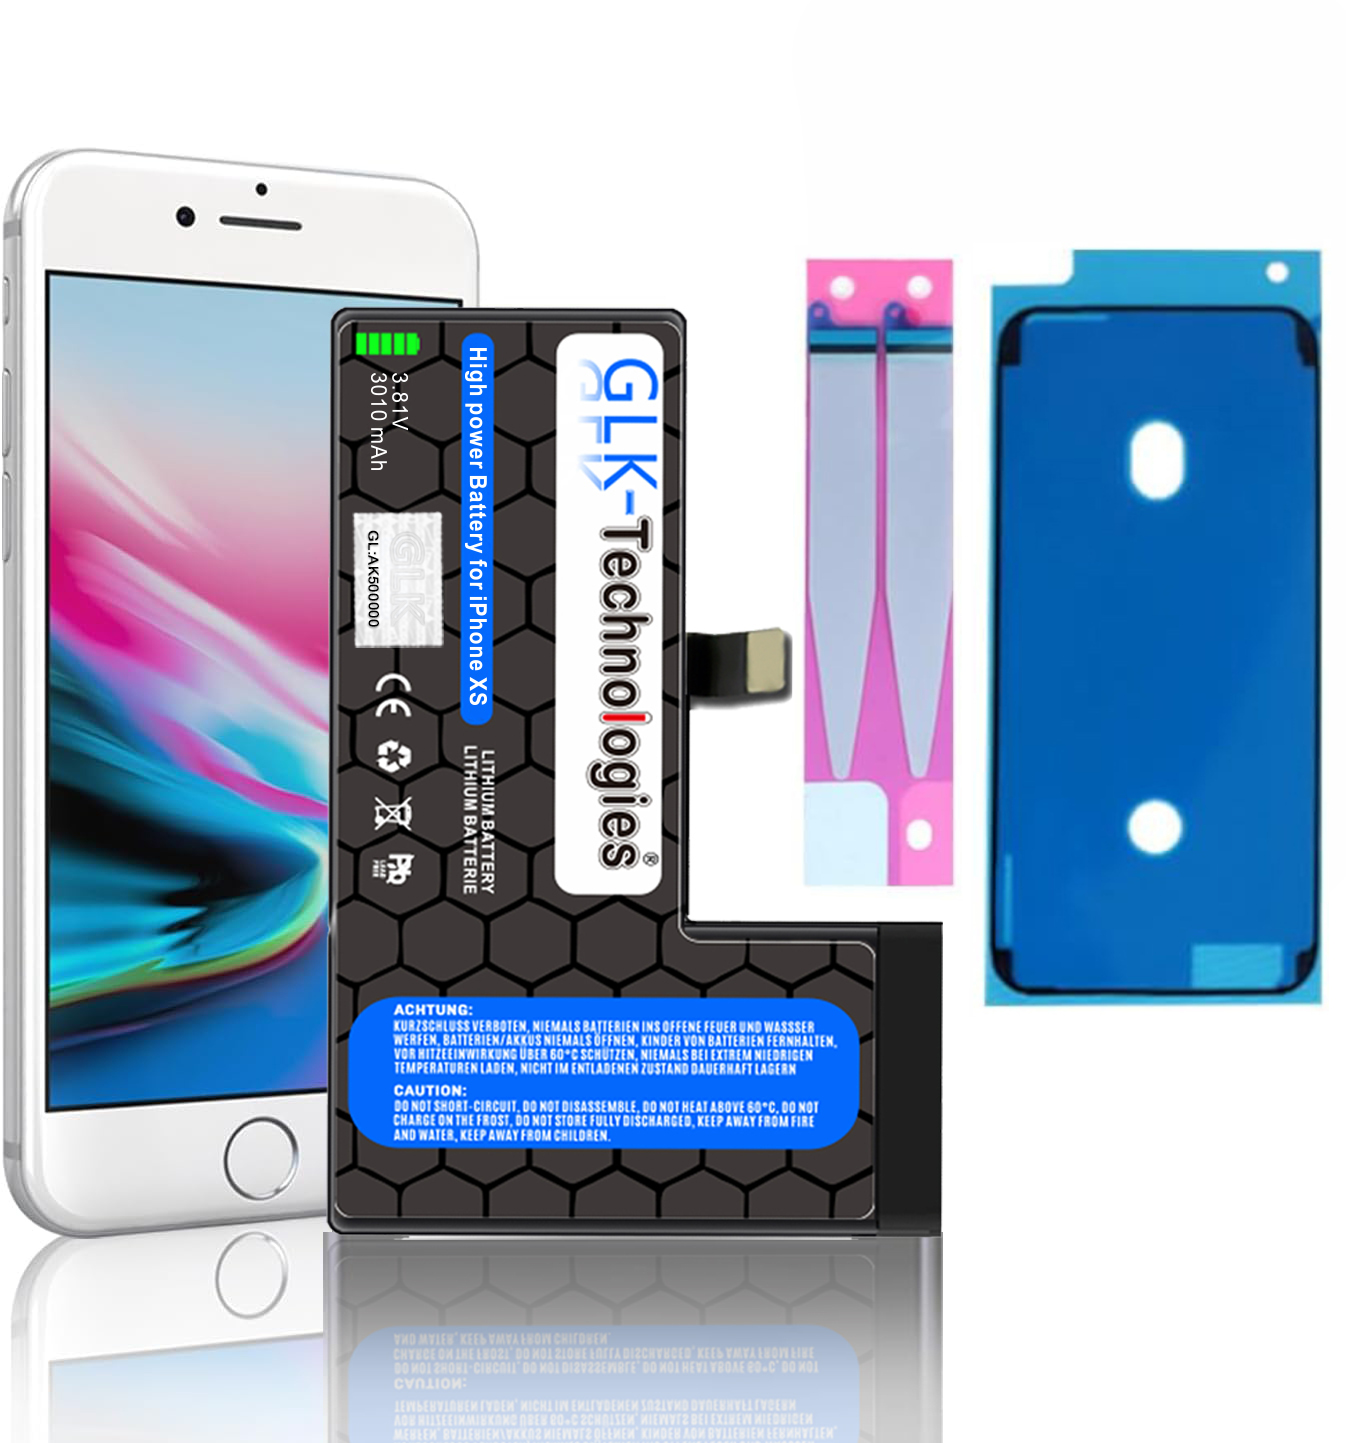 GLK-TECHNOLOGIES XS 3.8 Volt, Apple Akku, Klebebandsätze Smartphone Ersatz Li-Ion iPhone 2740mAh 2X inkl. Lithium-Ionen,